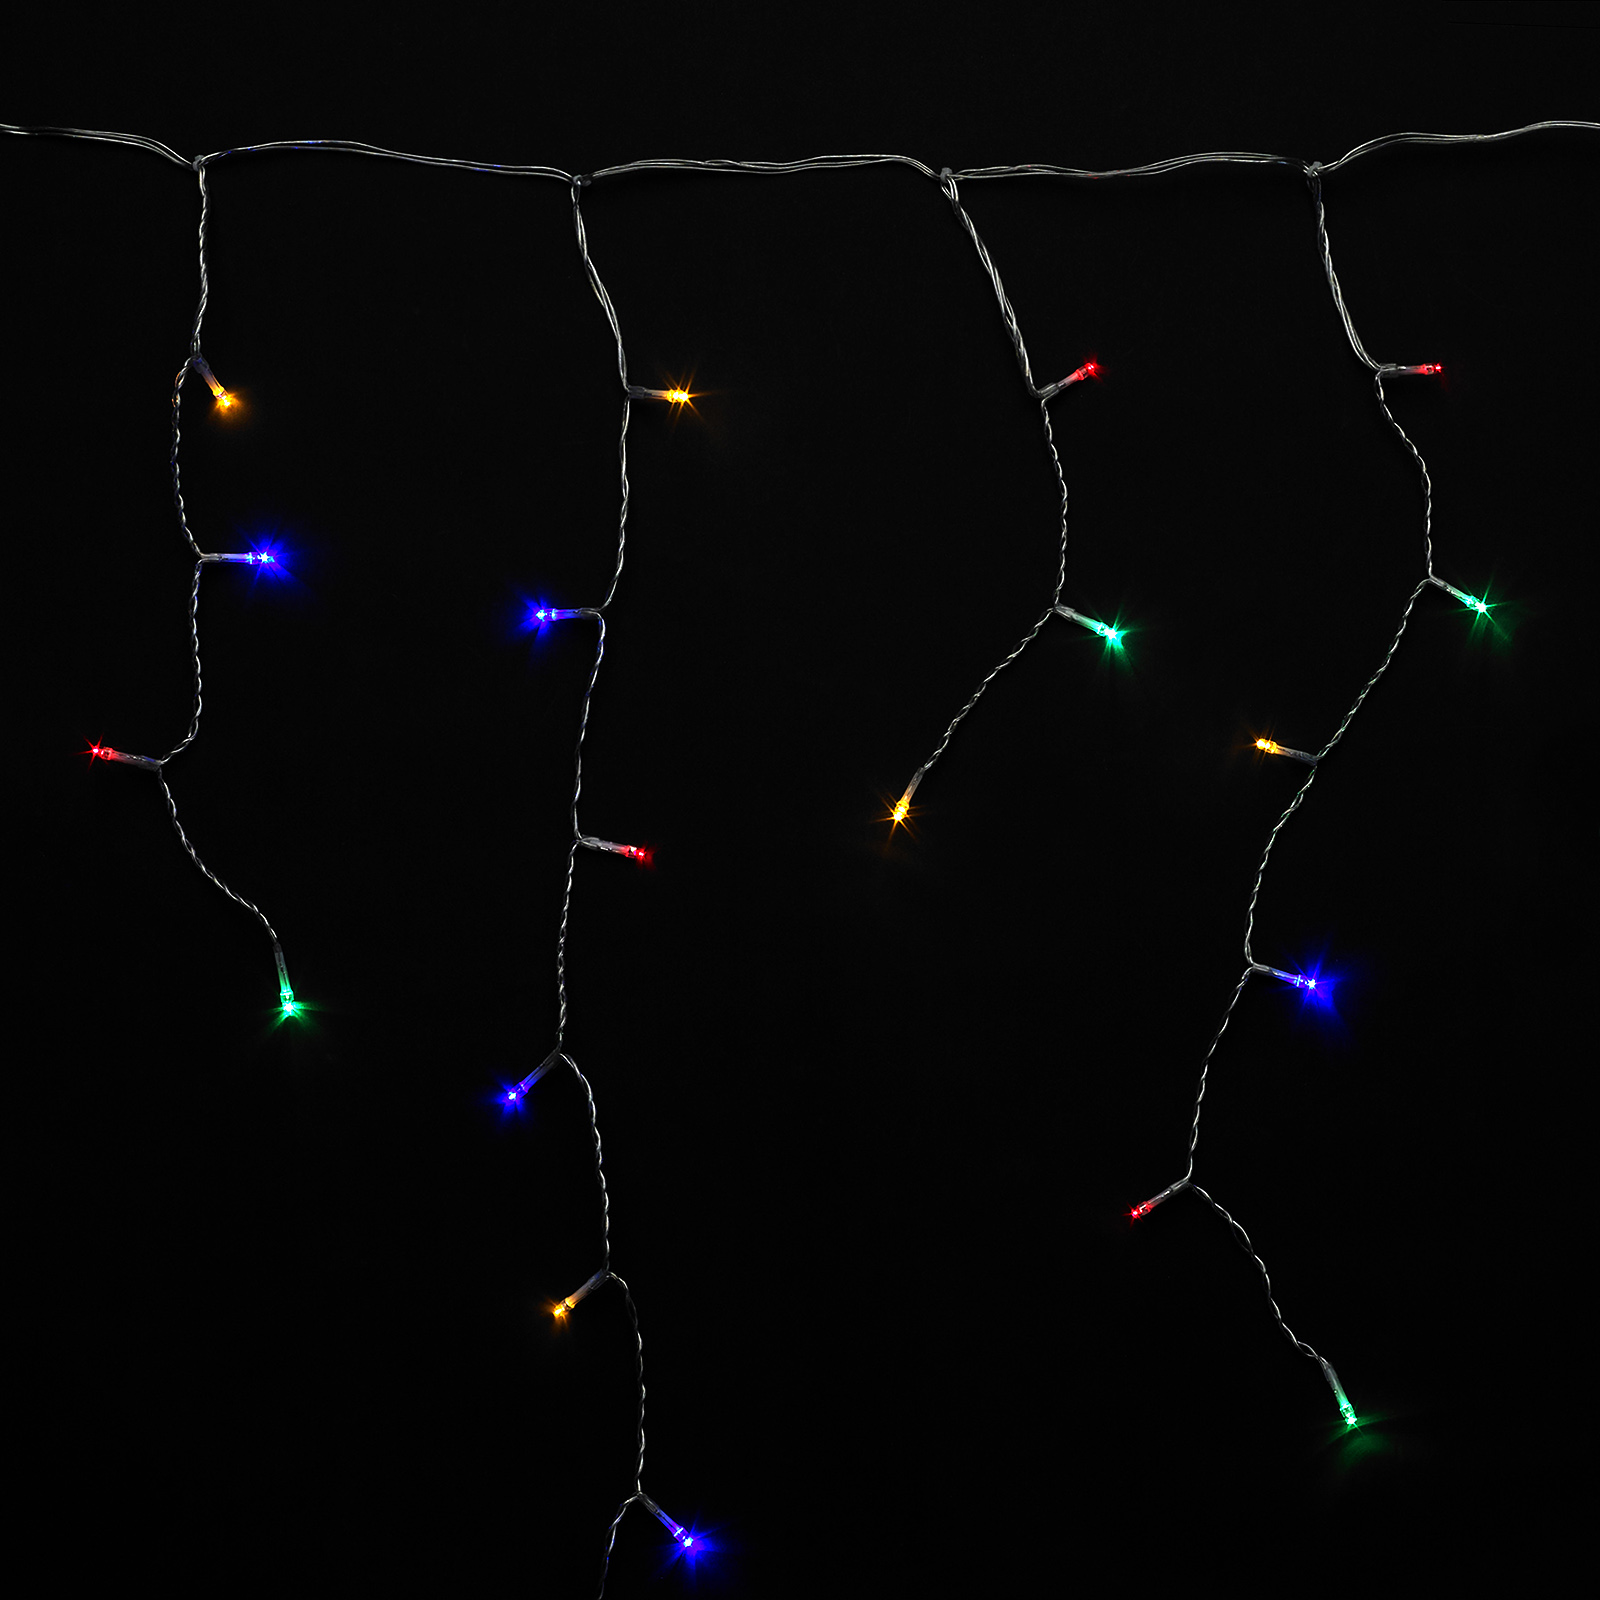 Guirnalda Luces Navidad Cortina 3x1 Metros 115 Leds Multicolor. Luz Navidad Interiores y Exteriores 